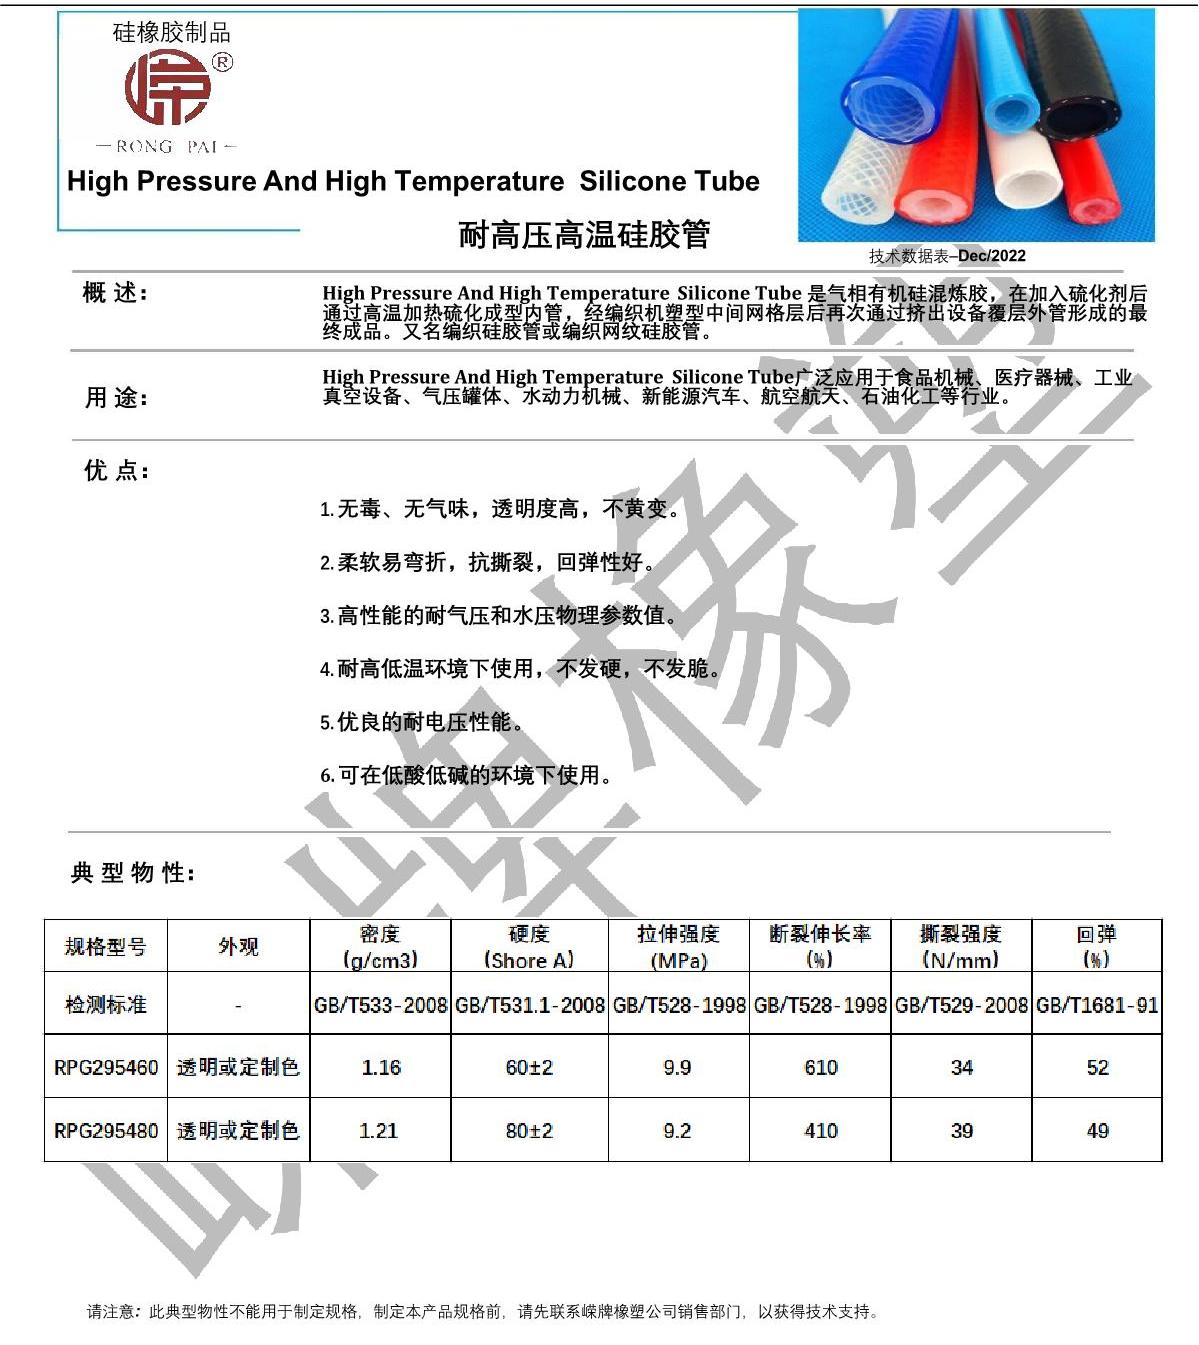 耐高压高温硅胶管产品说明_1.JPG